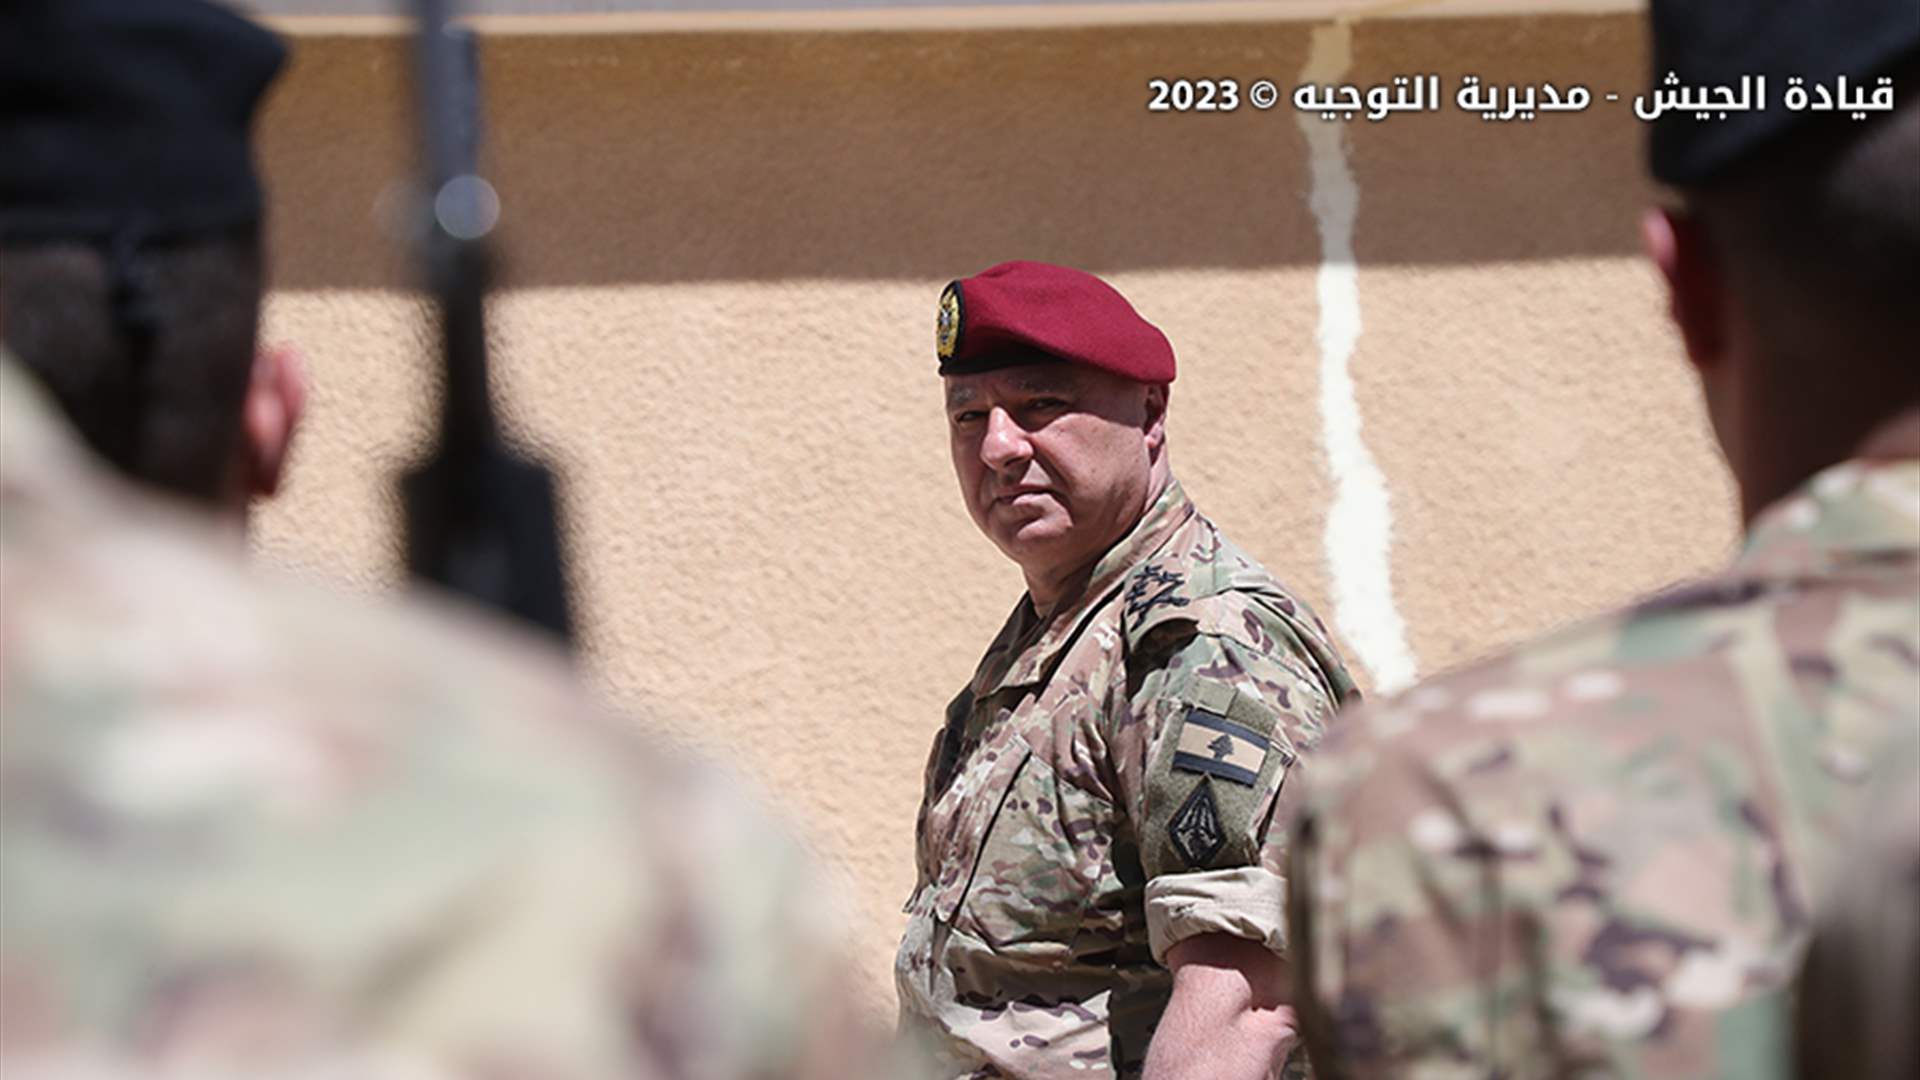 قائد الجيش: المؤسسة العسكرية مستمرة في تنفيذ مهماتها لحماية السلم الأهلي والاستقرار